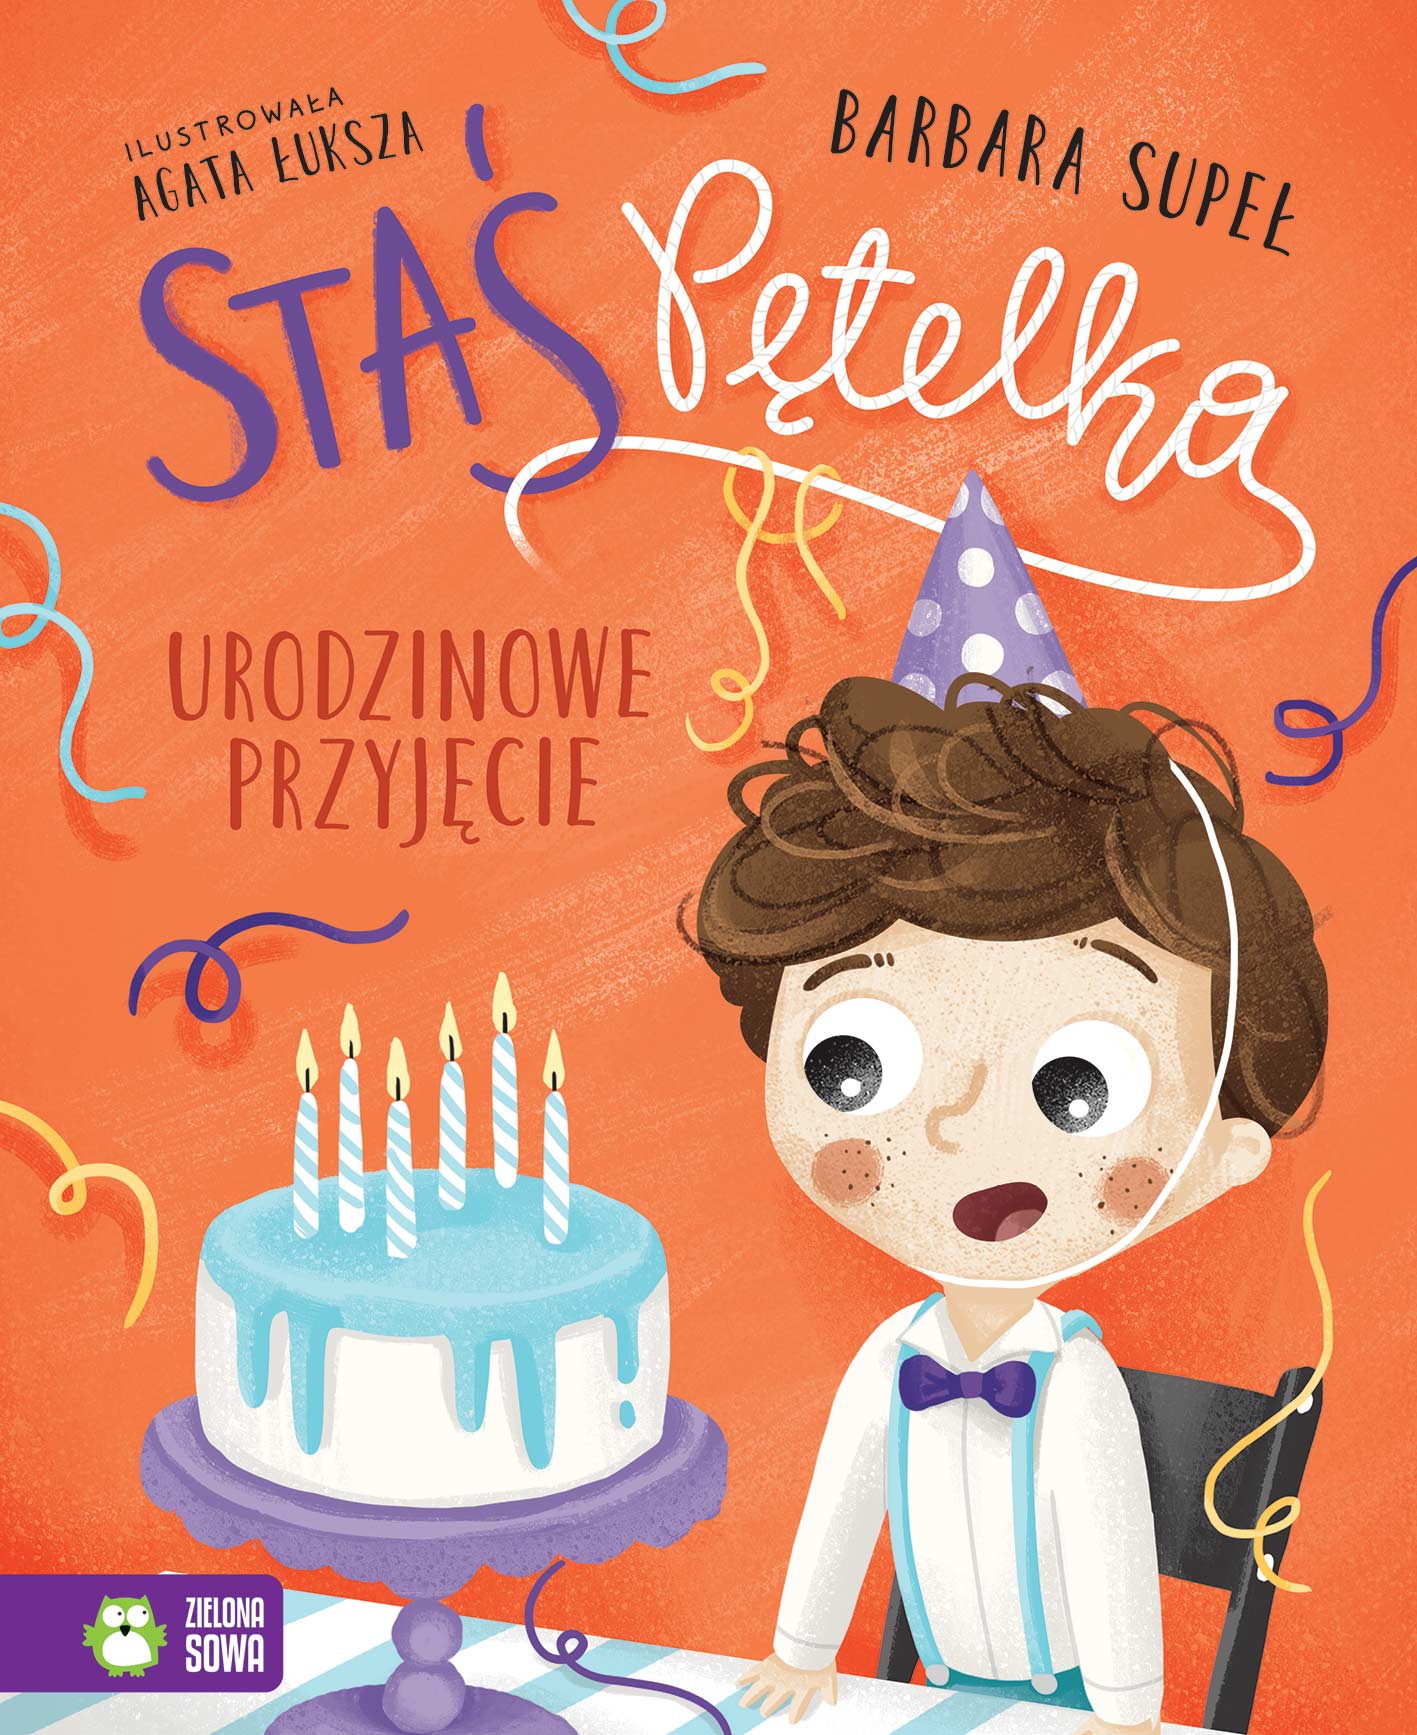 Okładka rysunkowa. Chłopiec elegancko ubrany w urodzinowej czapce na głowie, z otwartymi ustami oraz tort ze świeczkami